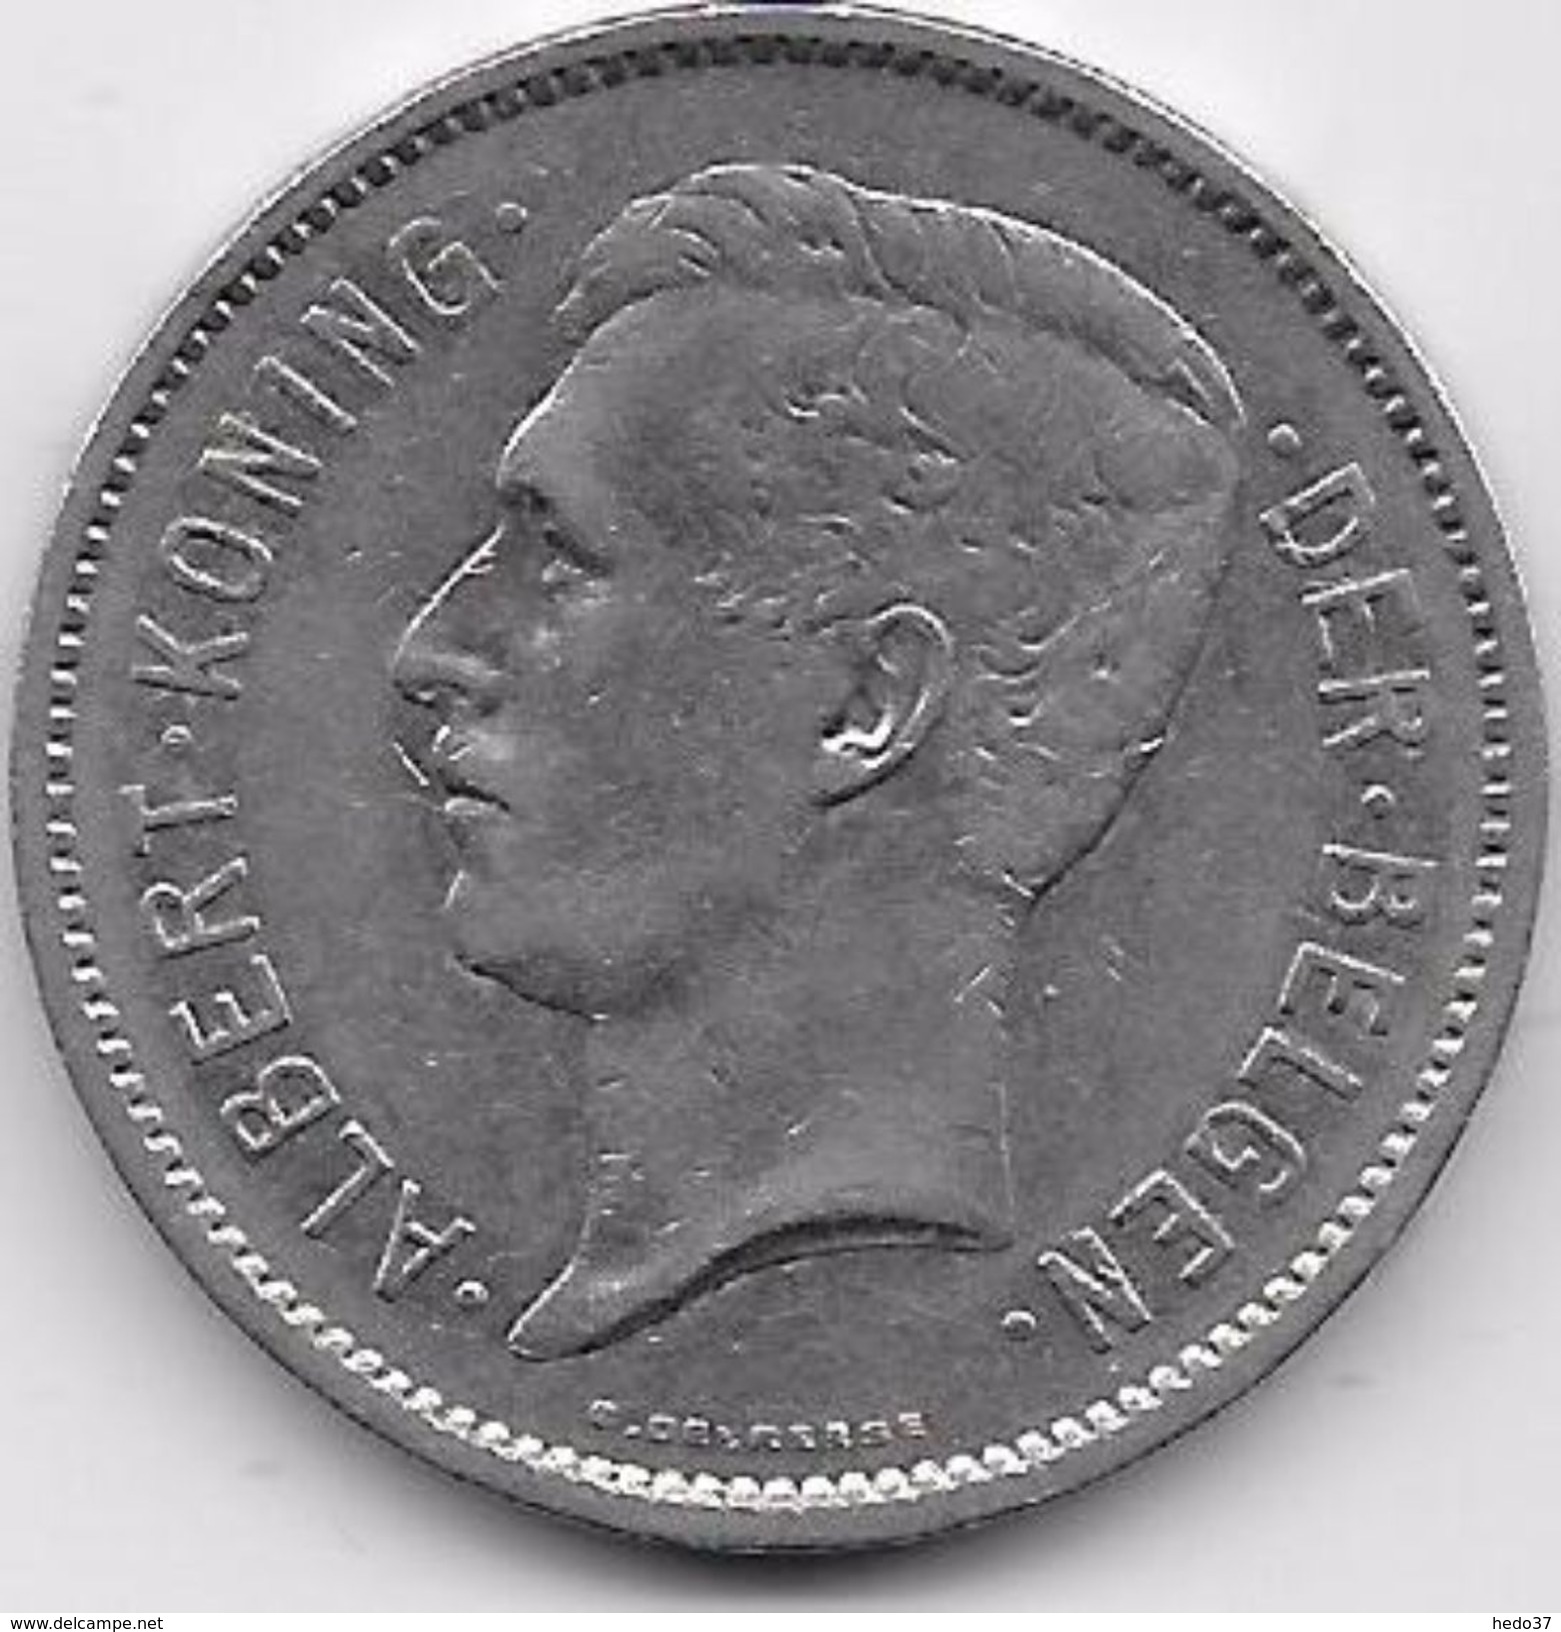 Belgique - 5 Francs 1931 - 5 Frank & 1 Belga